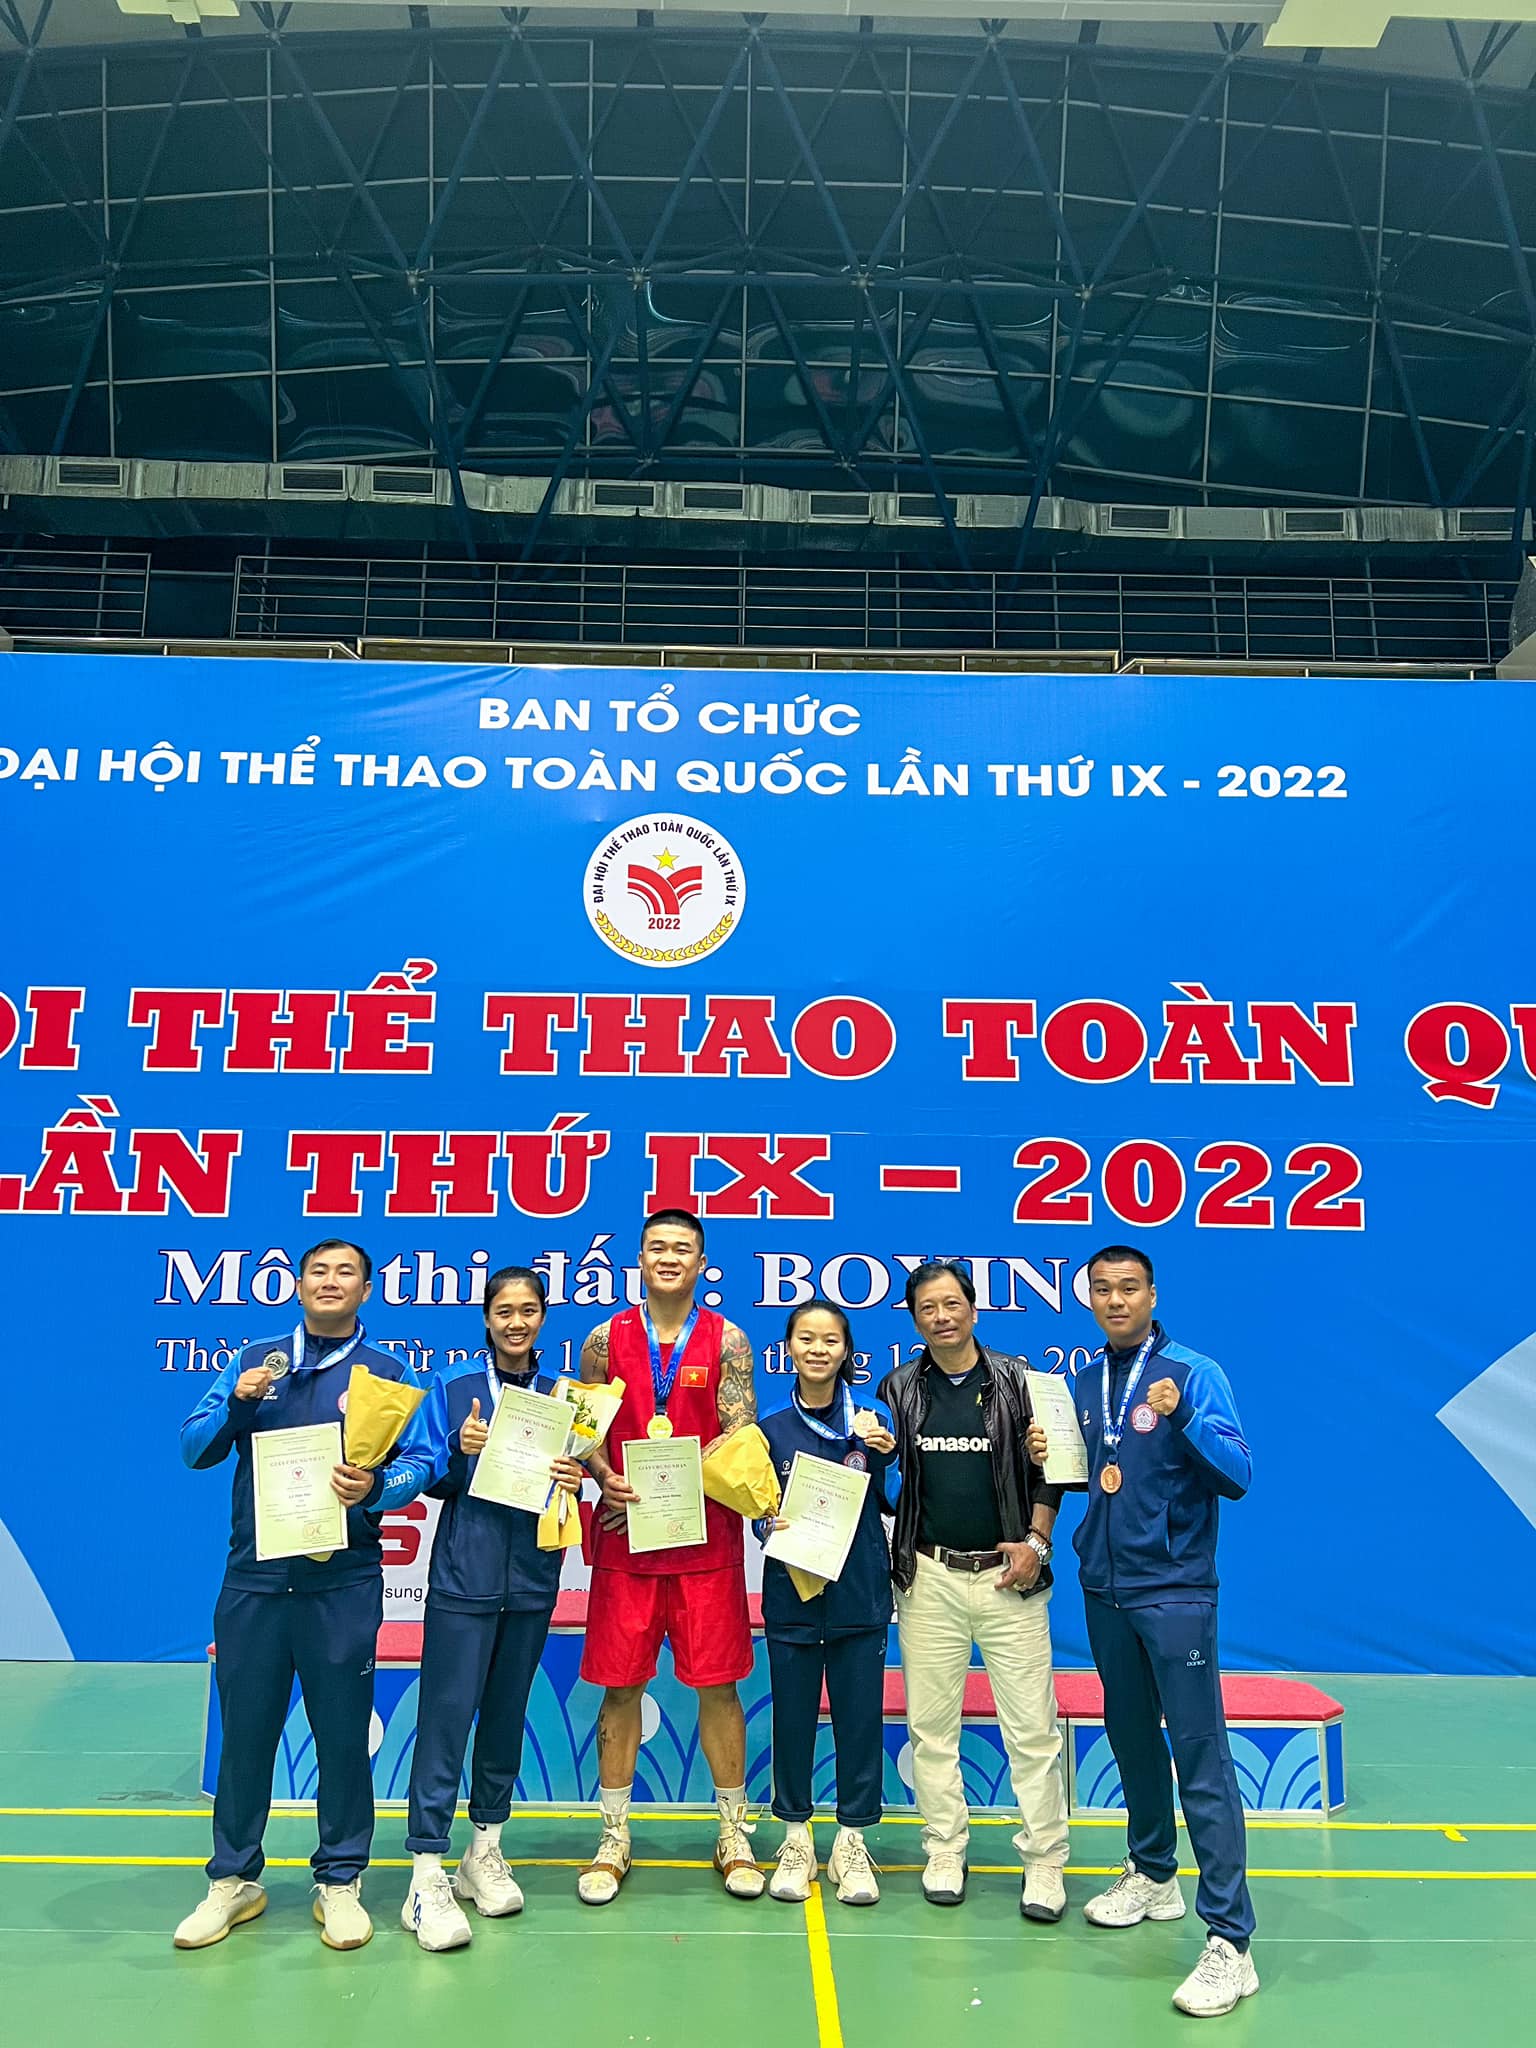 Trương Đình Hoàng dừng thi đấu ở các giải quốc gia sau tấm HCV tại Đại hội thể thao toàn quốc - Ảnh 2.